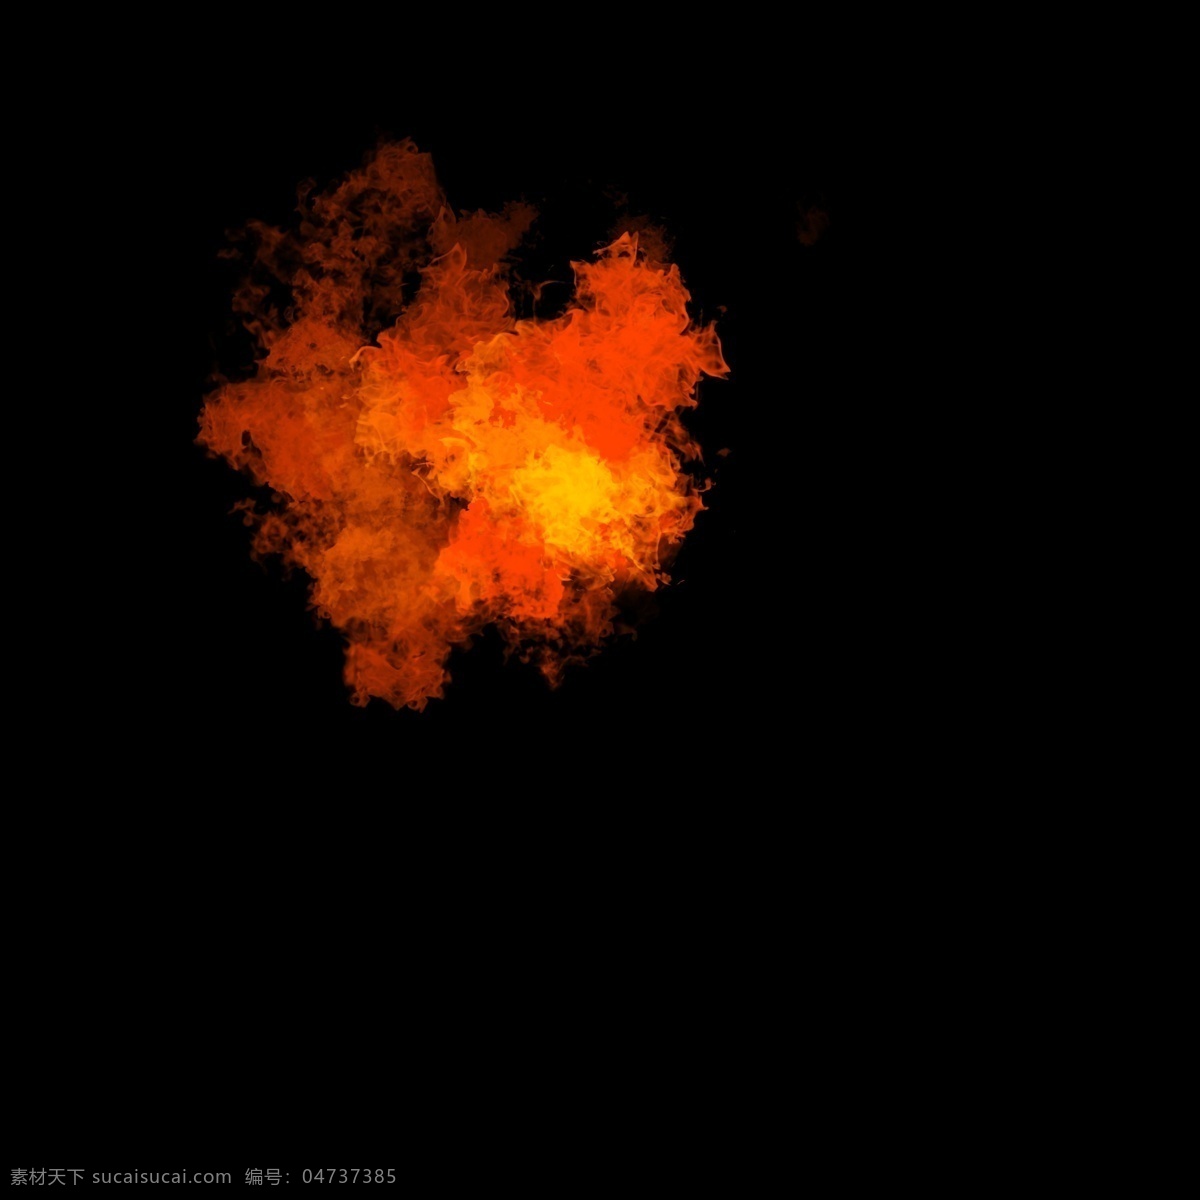 仿真 实 火焰 自然 元素 耀斑 火 火星 耀斑是 推荐 深色 背景 下 透明 装饰 ps 特效图 火堆 火花 字